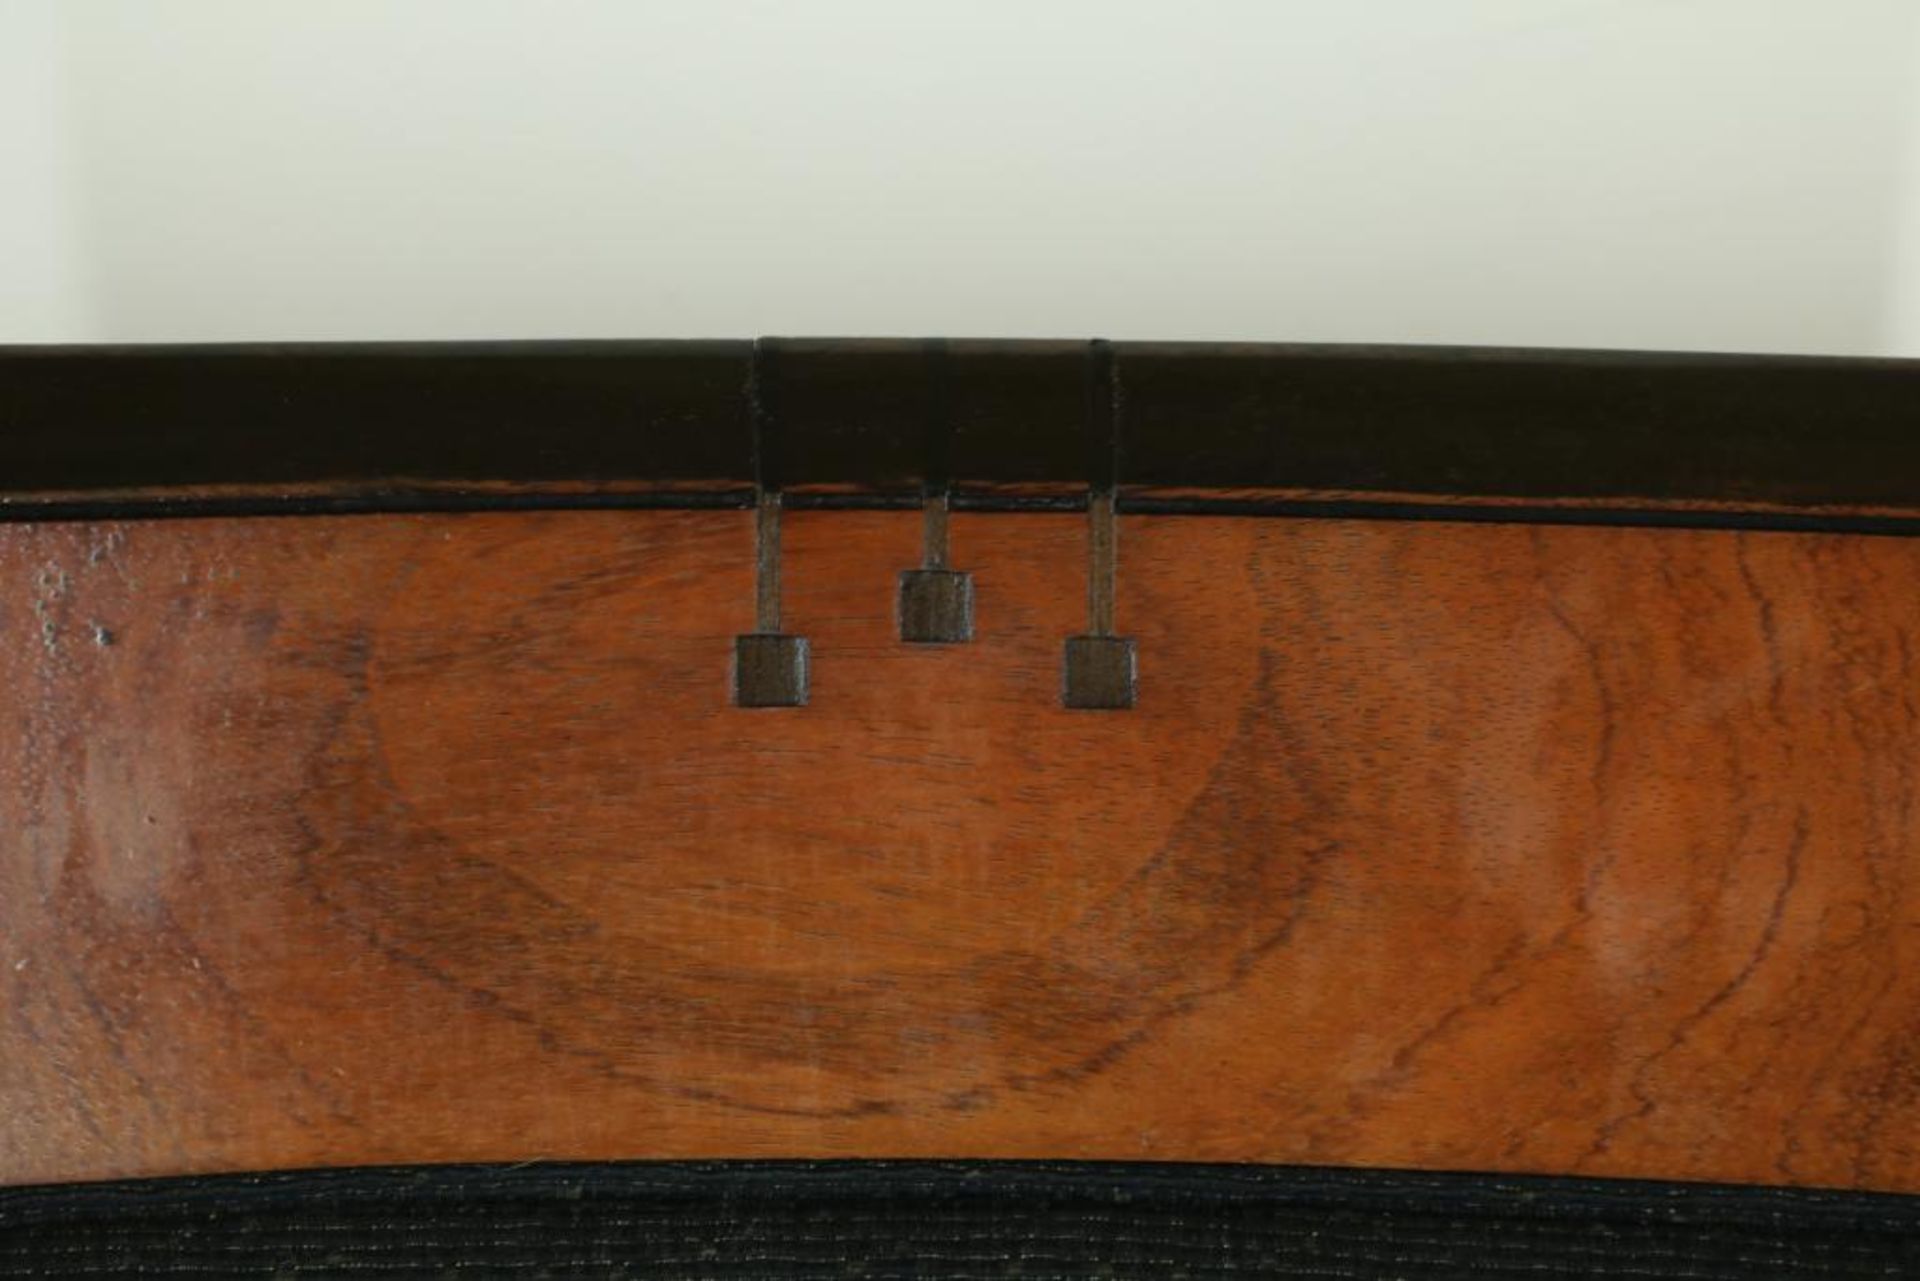 Schuitema decoforma fauteuil met stoffen bekleding. - Bild 4 aus 4